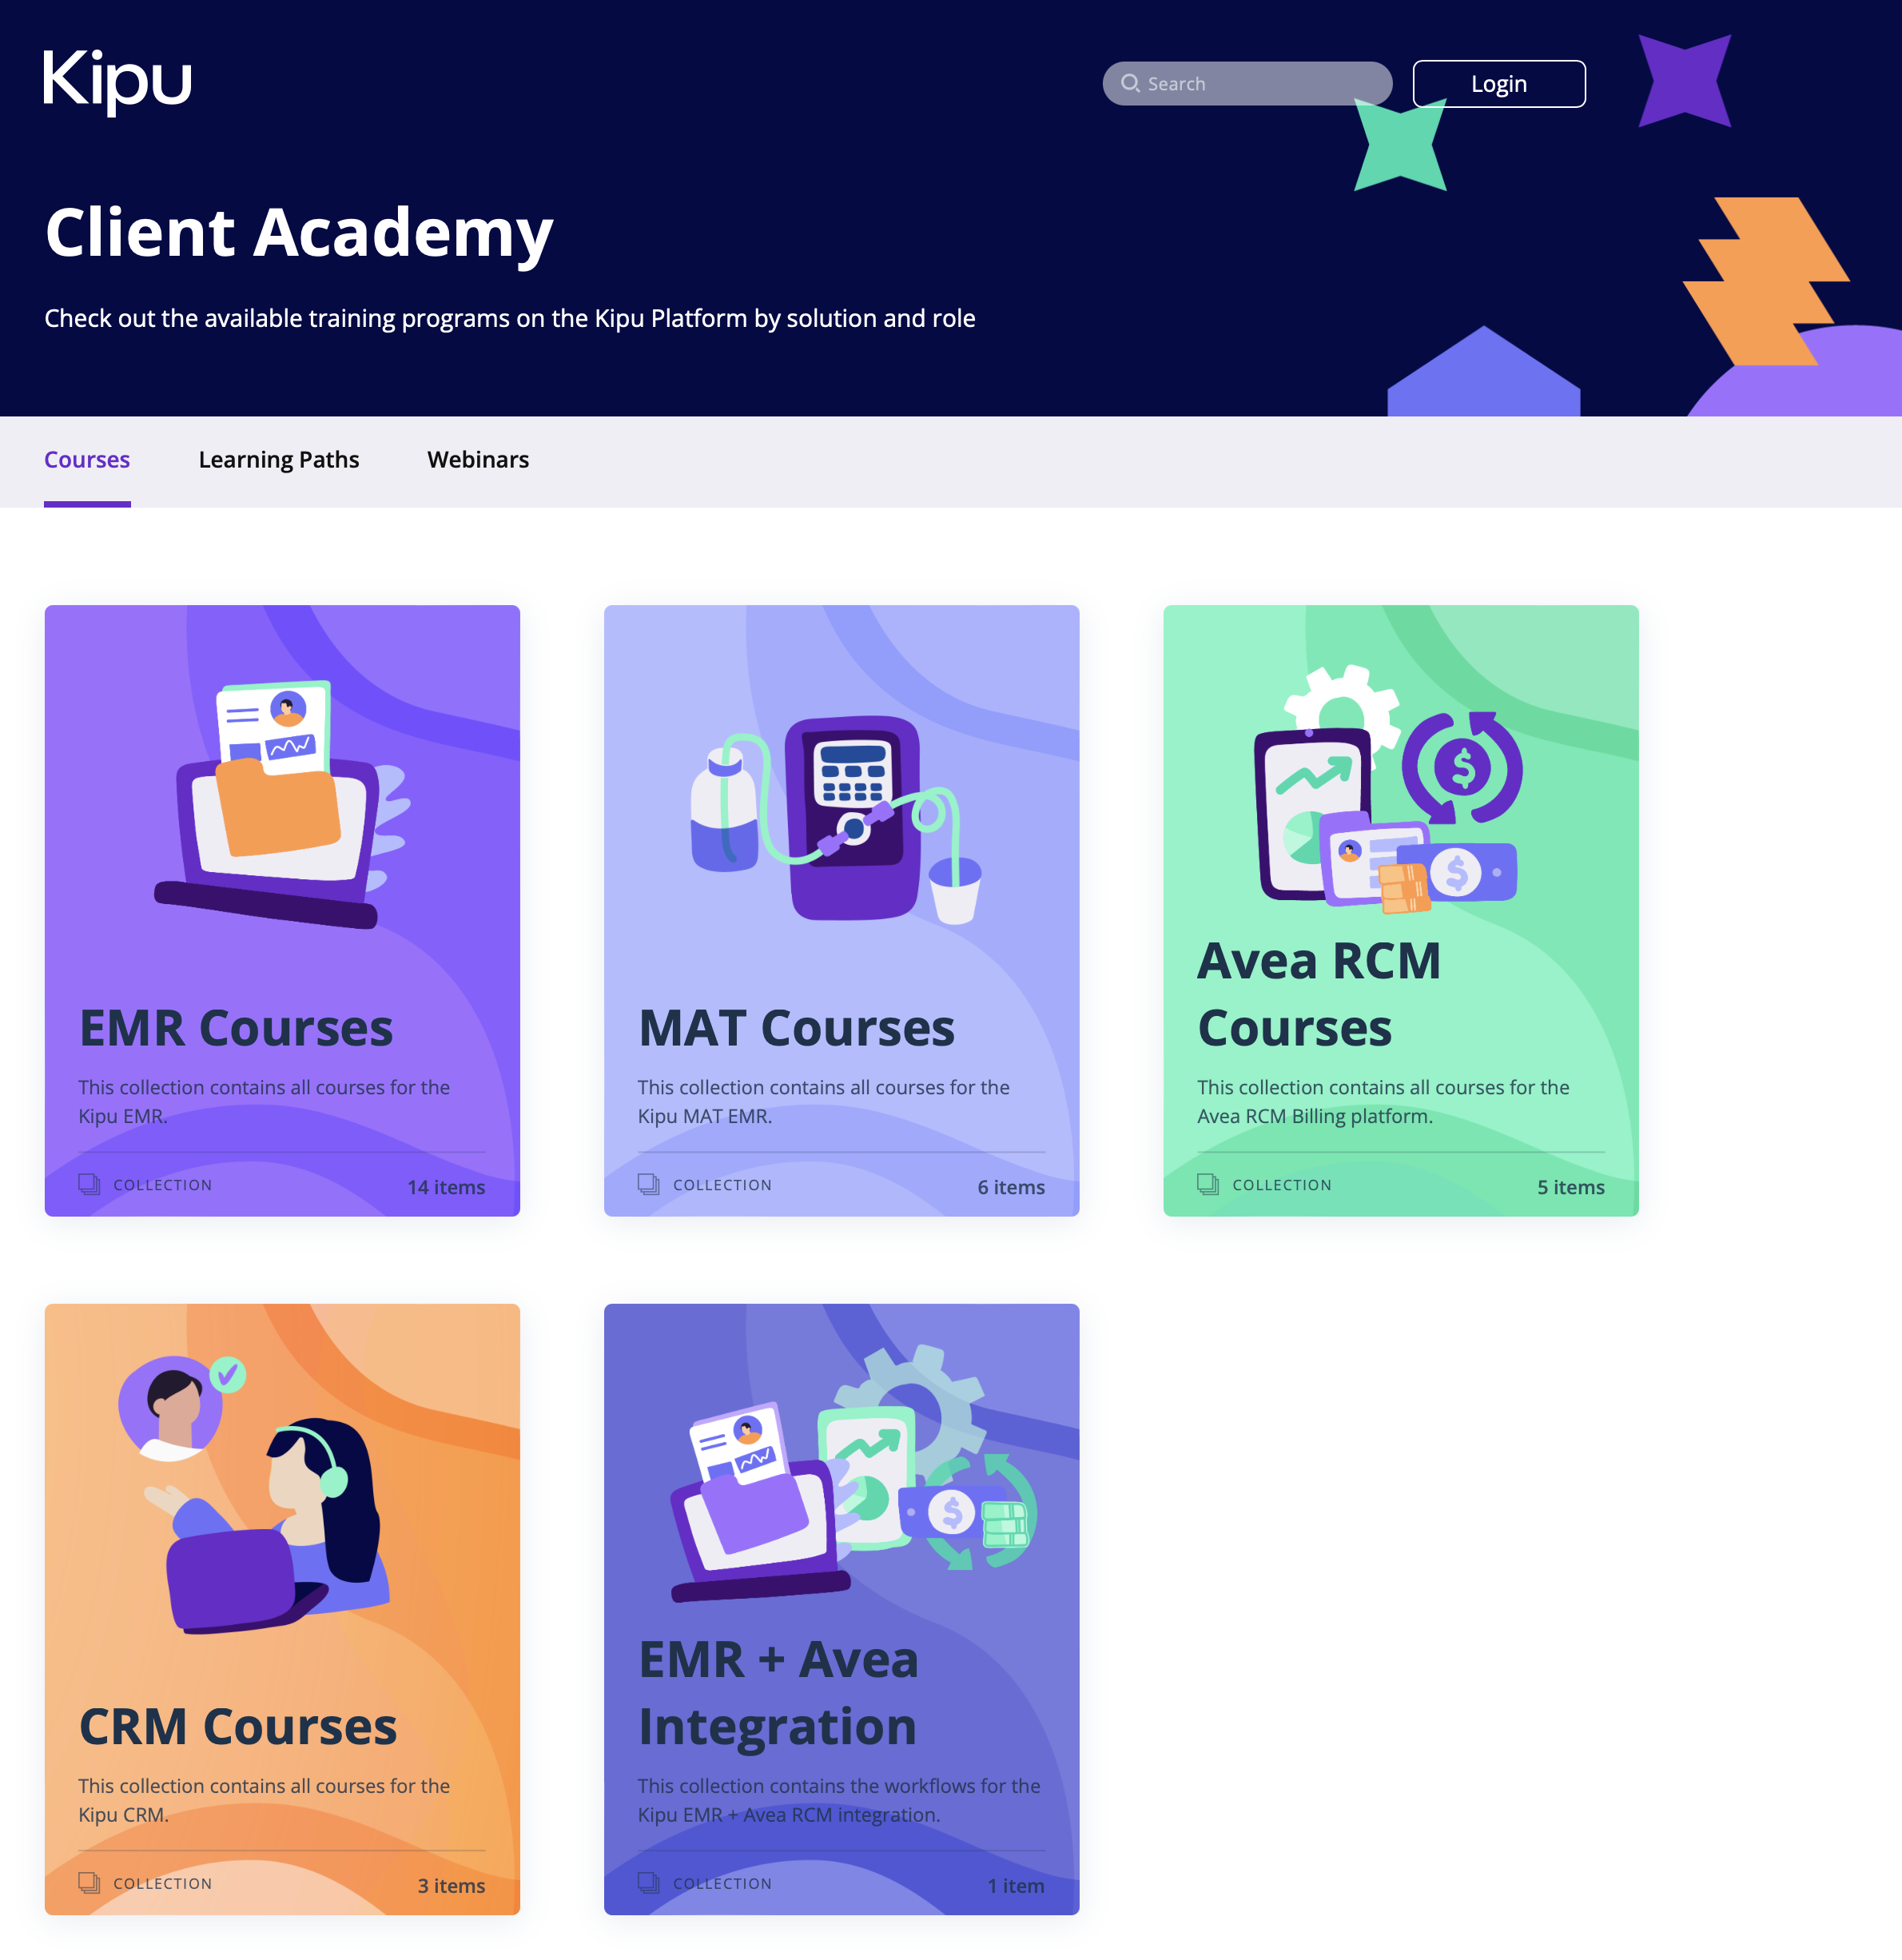 Kipu Client Academy